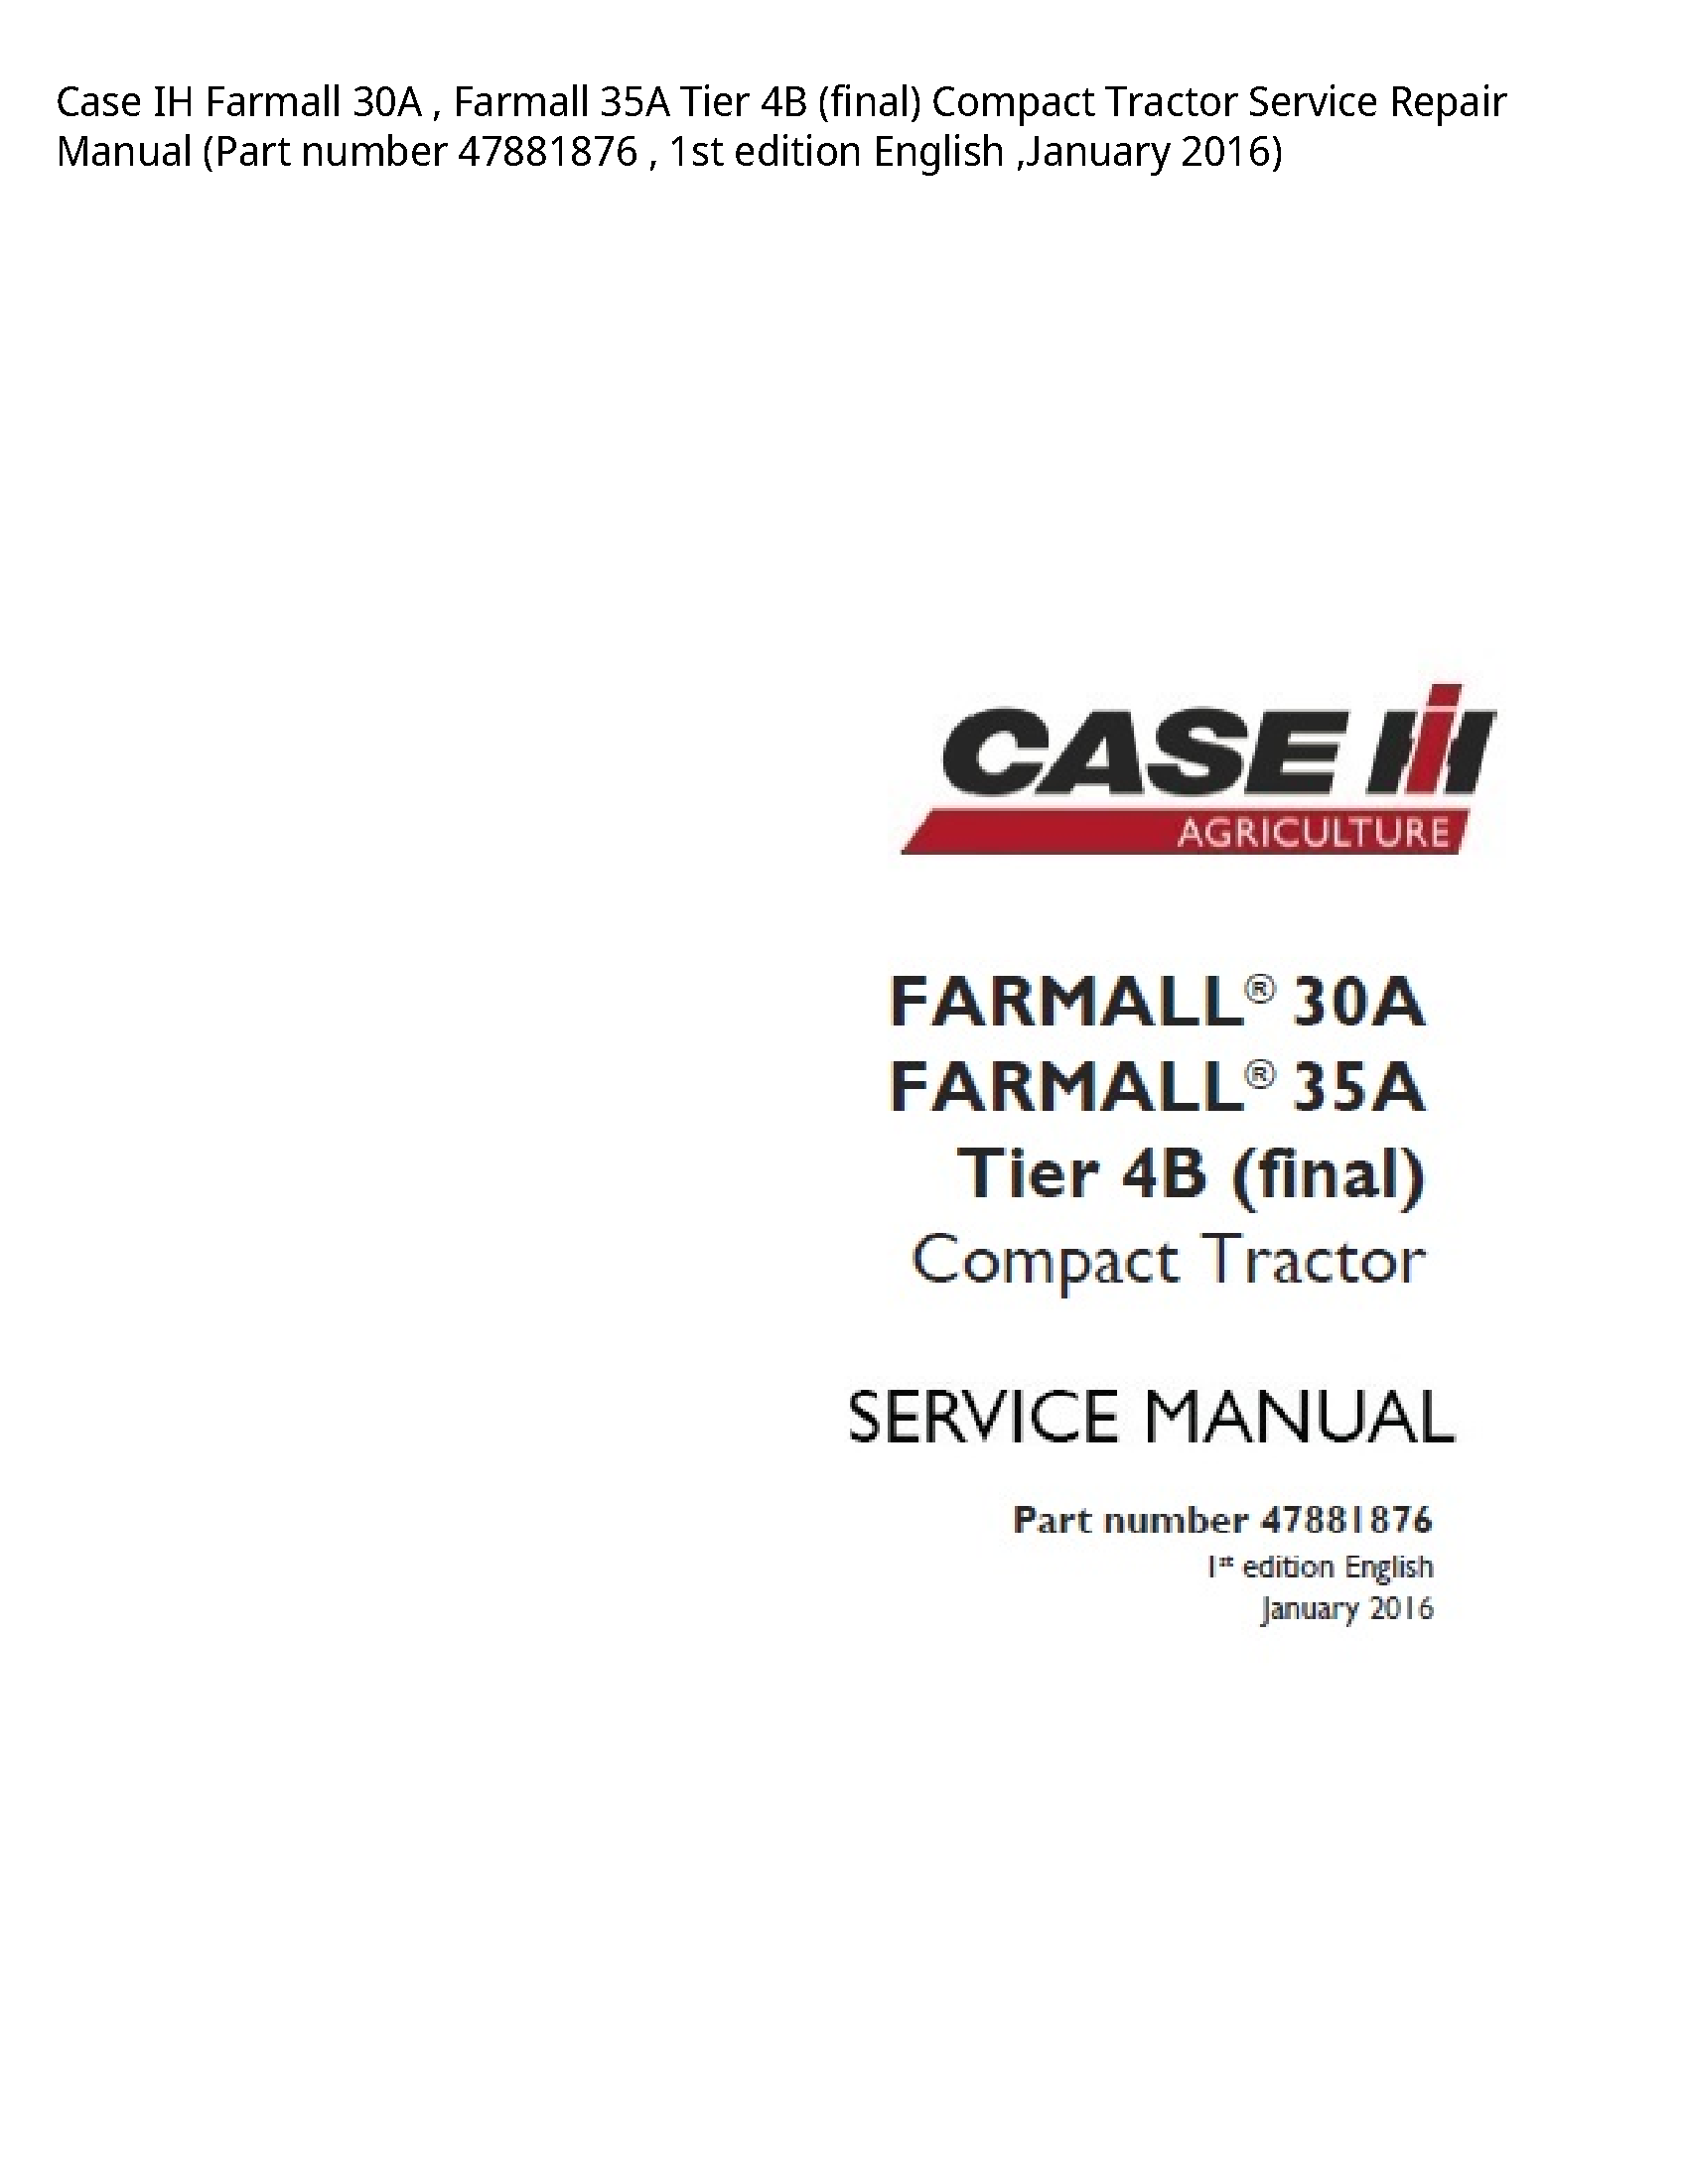 Case/Case IH 30A IH Farmall Farmall Tier (final) Compact Tractor manual